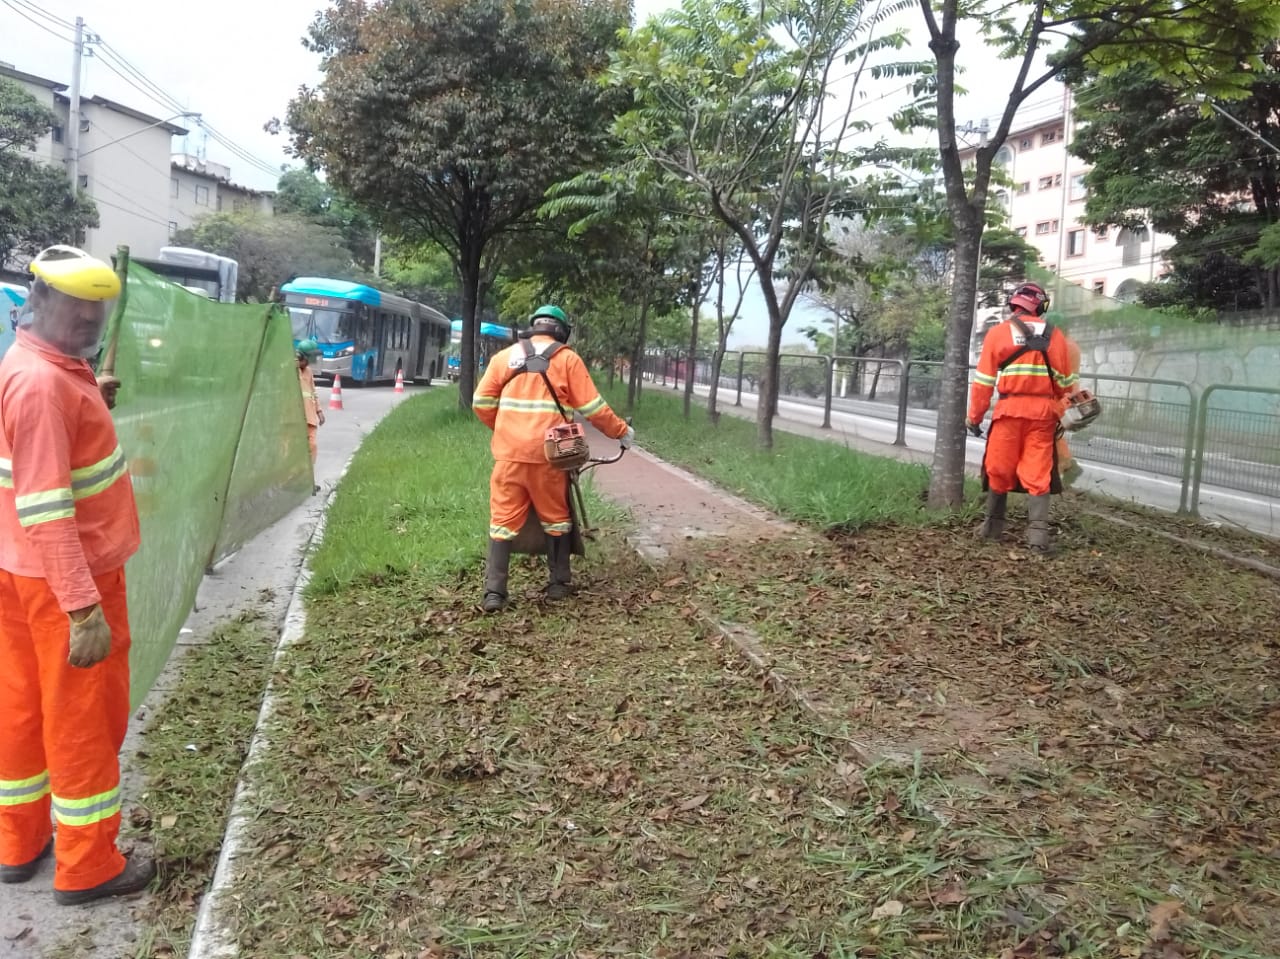 #PraCegoVer - Trabalhadores da Subprefeitura cortam grama no canteiro central. Outros seguram as proteções de tela. Na via, ao fundo, há dois ônibus.